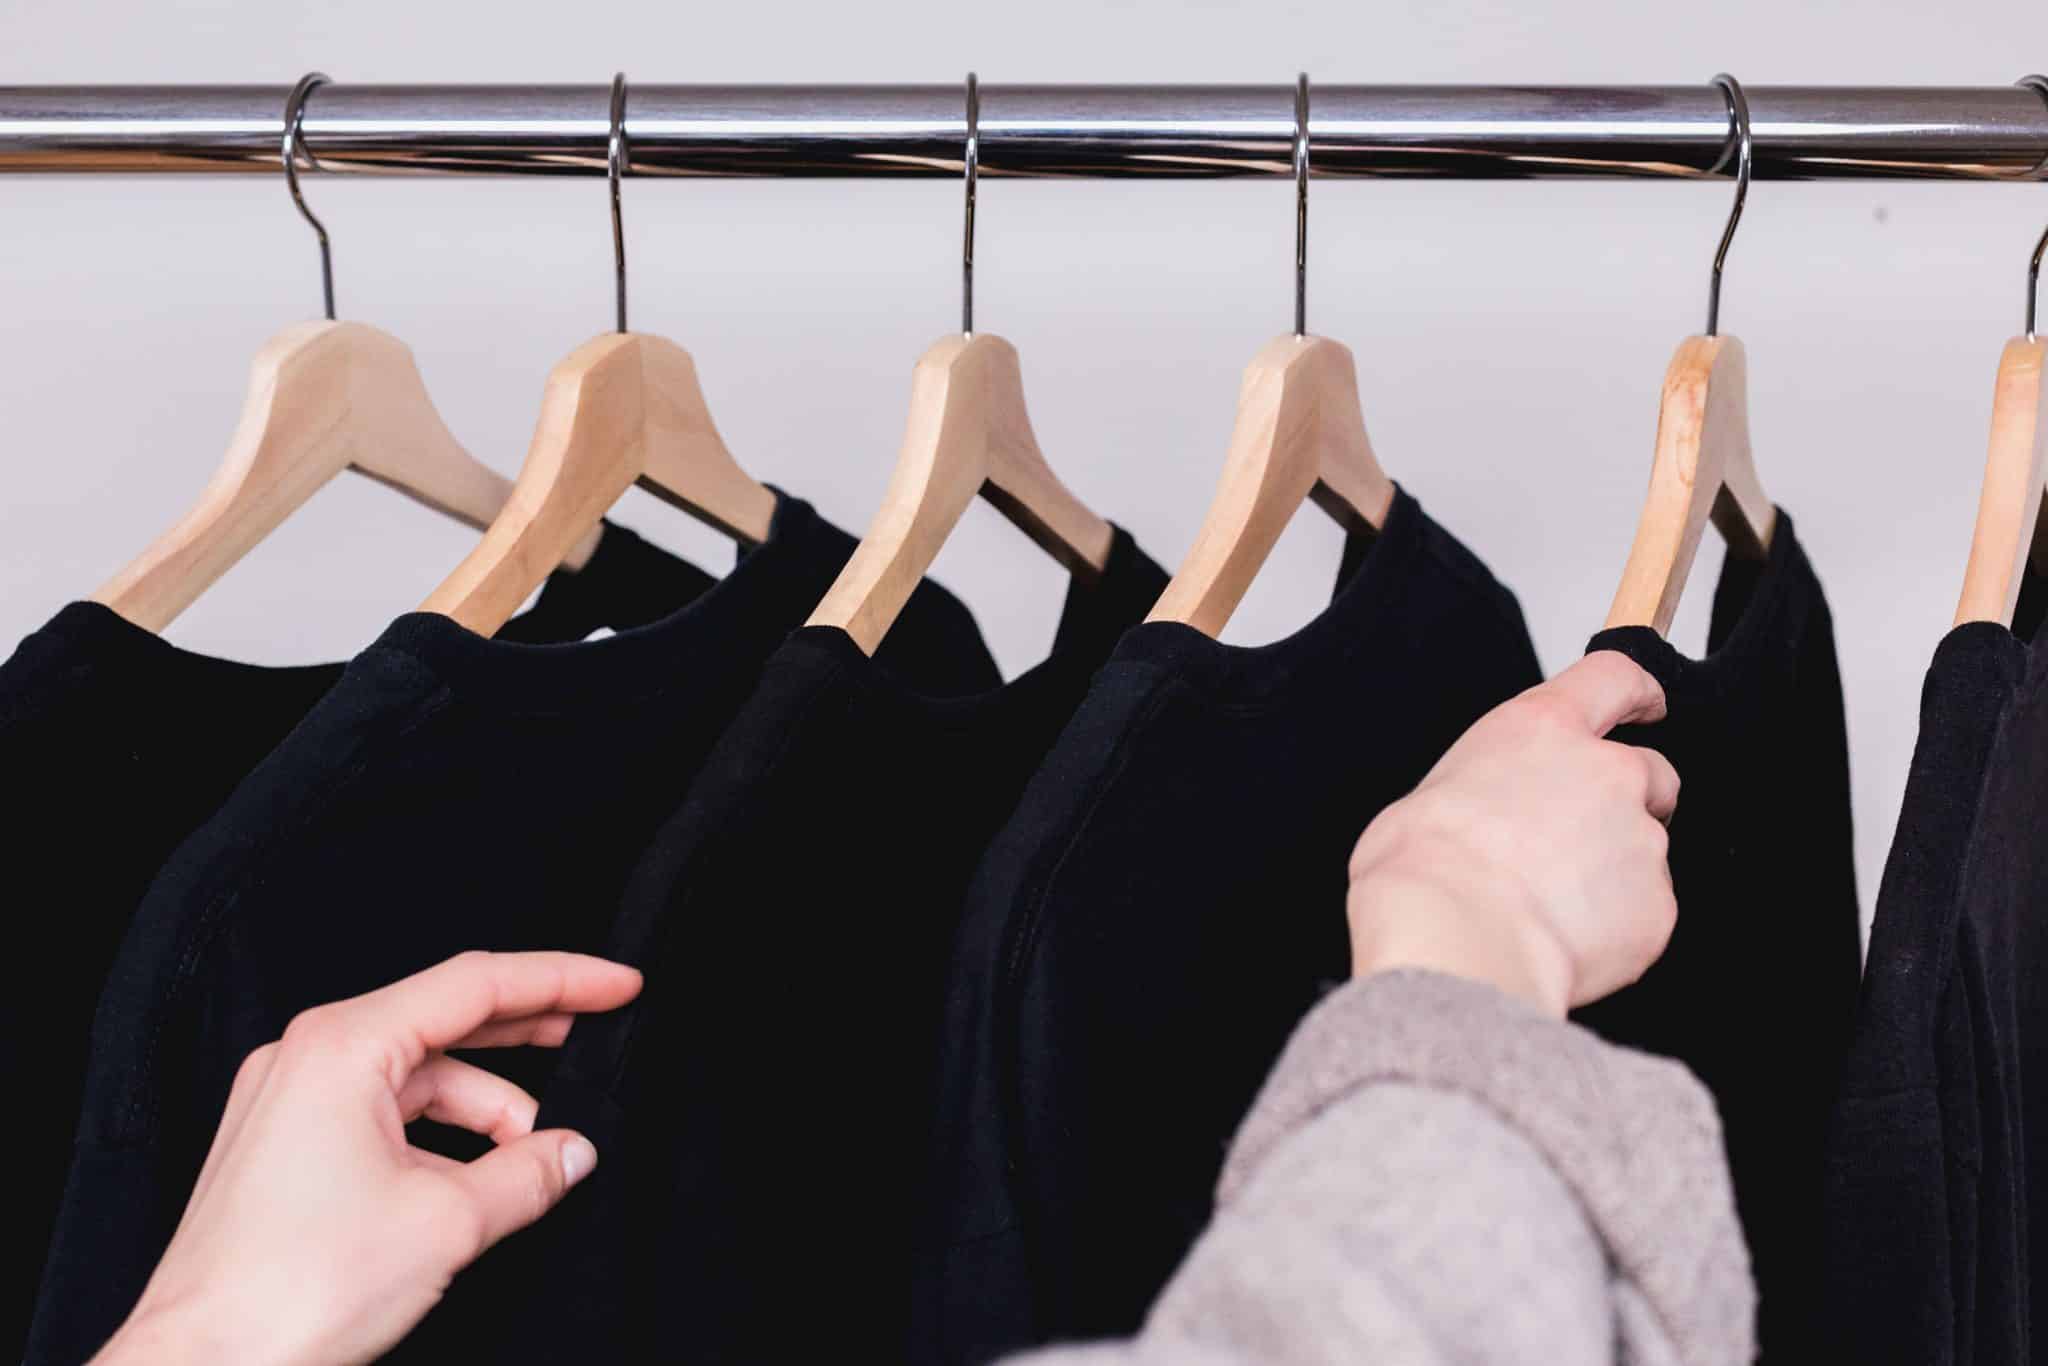 Une femme choisit parmi plusieurs vêtements noirs sur des cintres.